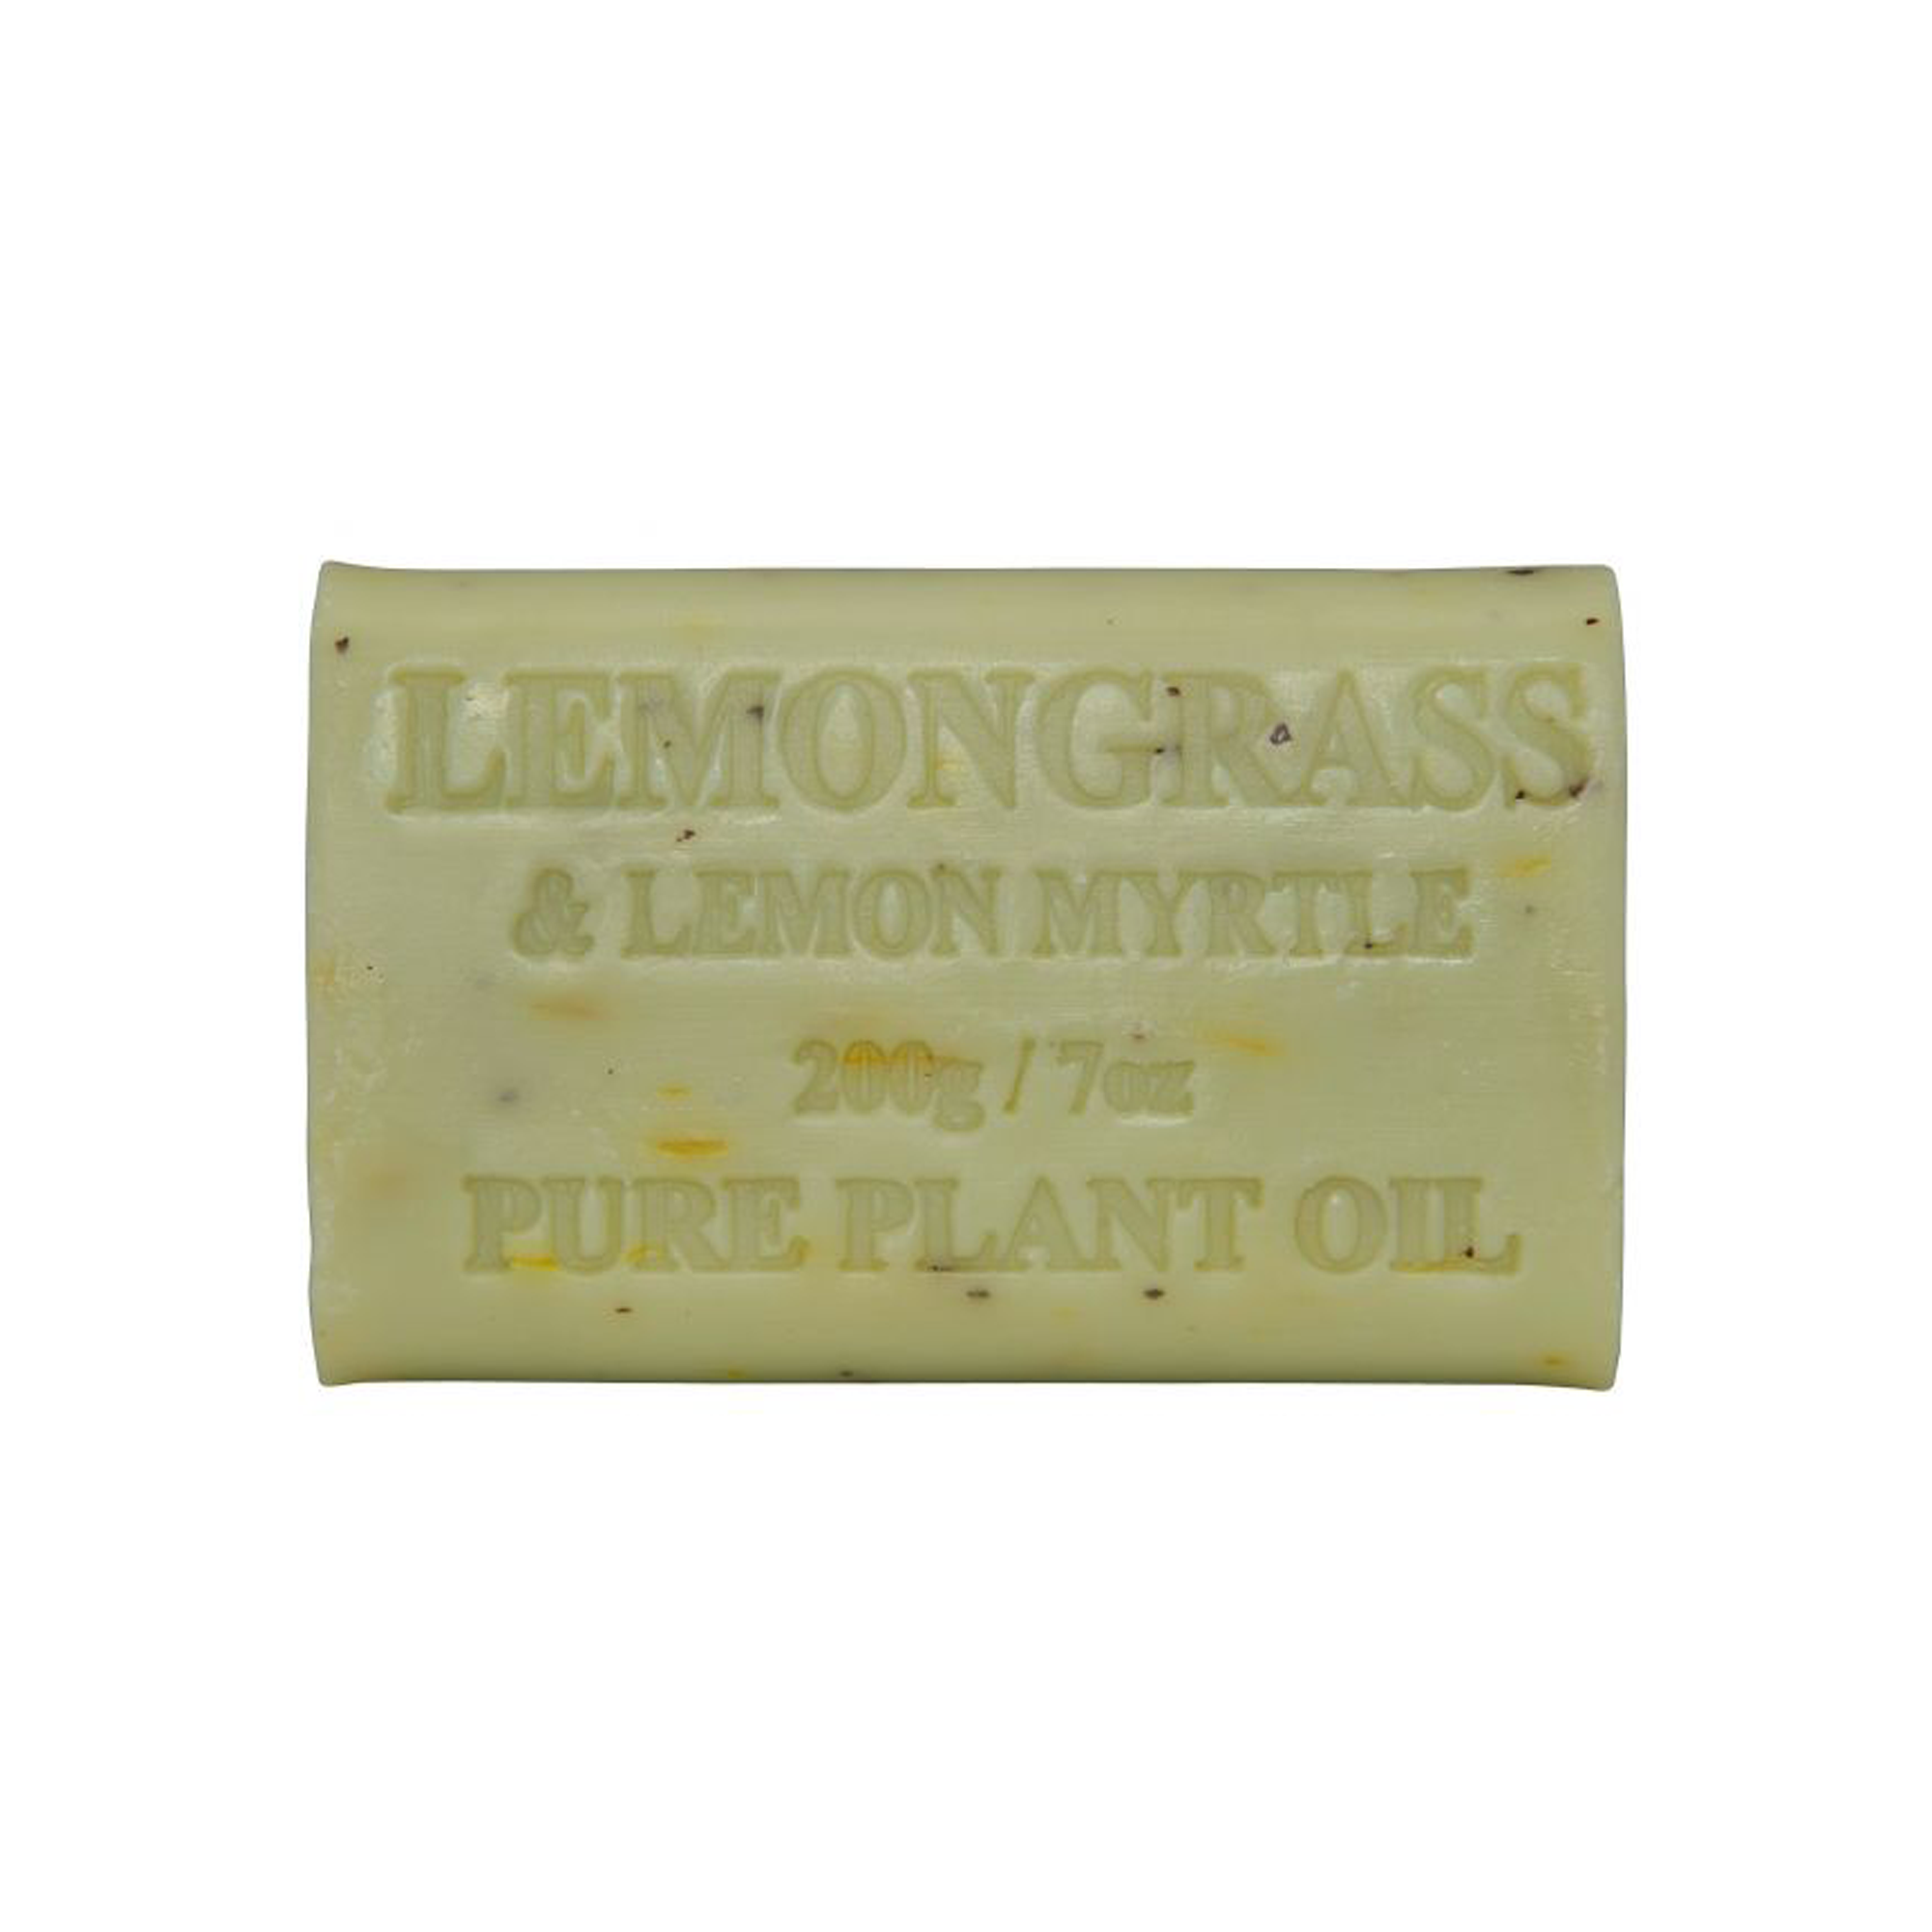 Lemongrass and Lemon Myrtle 200g